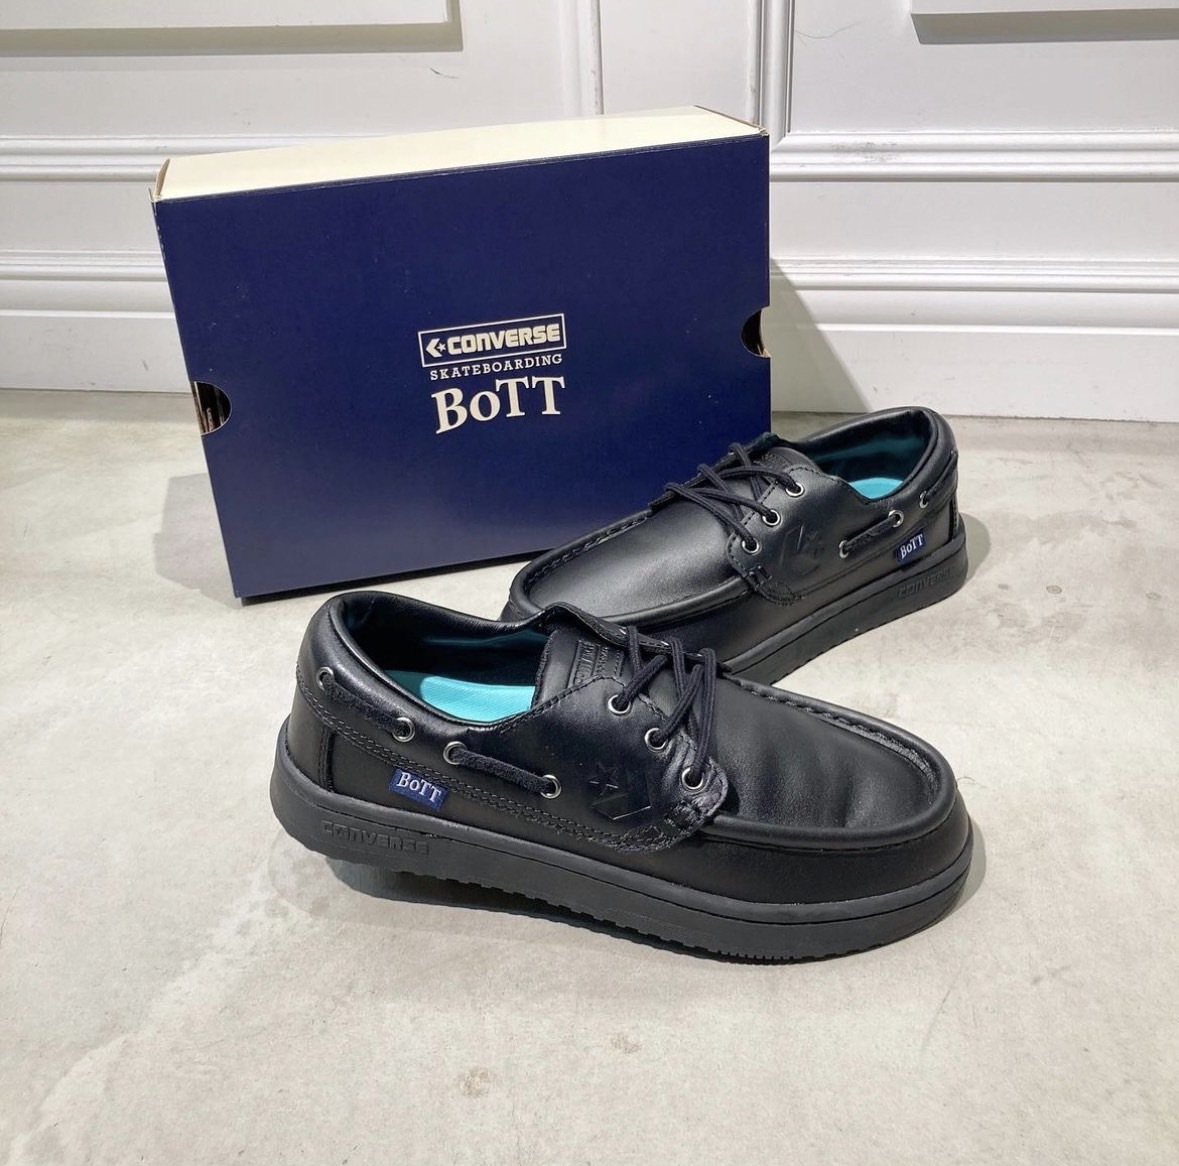 34201470 日本CONVERSE DECKSTAR SK BoTT + 黑皮革樂福鞋